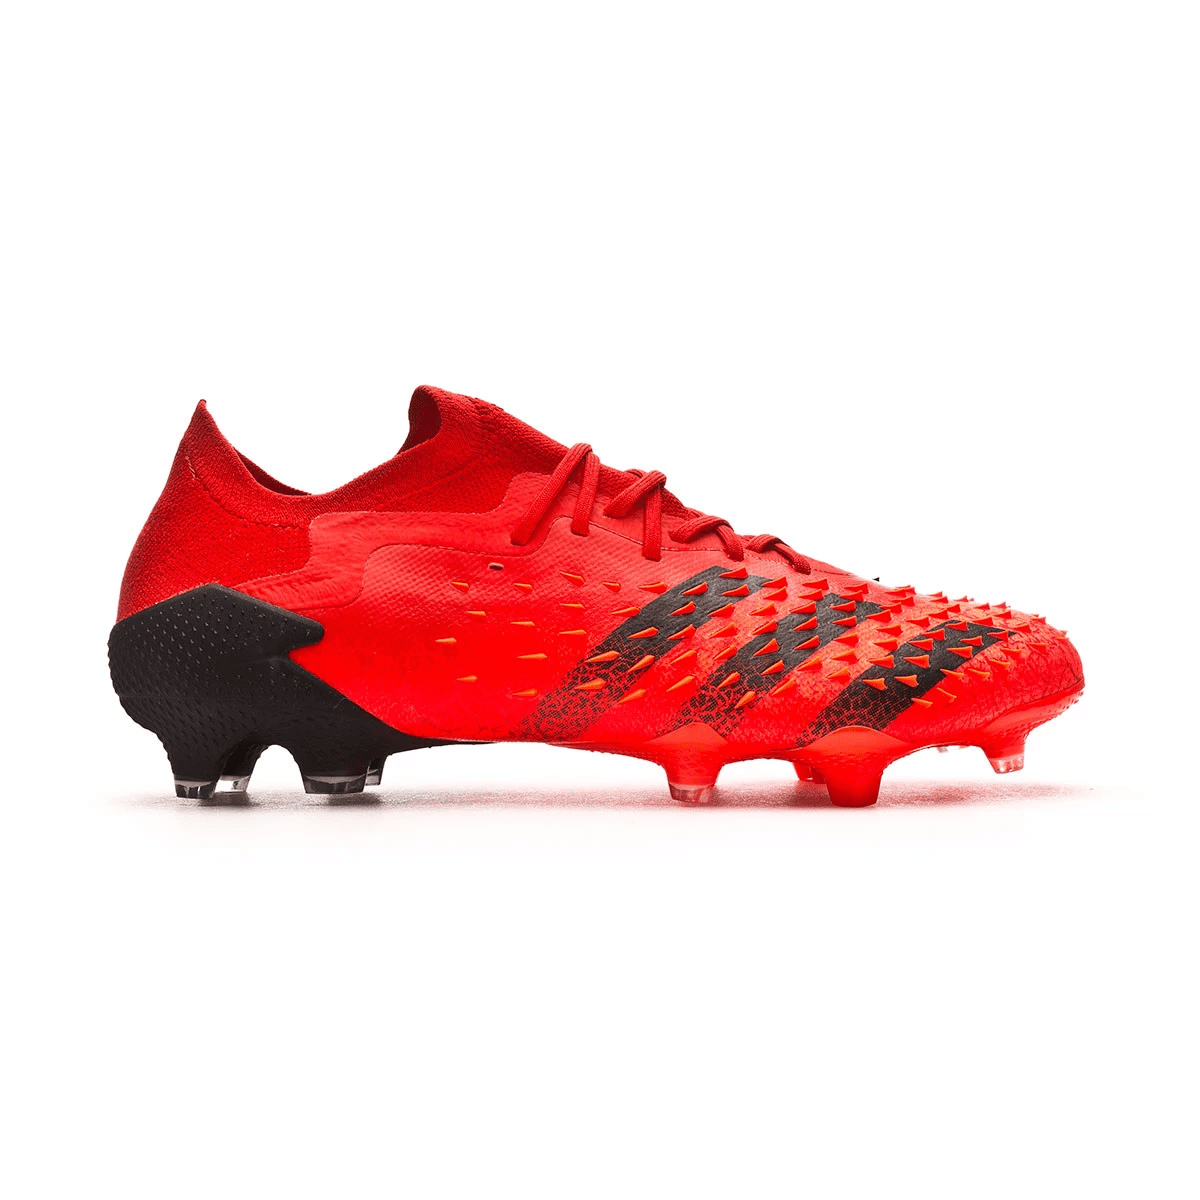 Adidas Predator Freak.1 L FG Meteorite Pack – Red FY6266 – Football ...